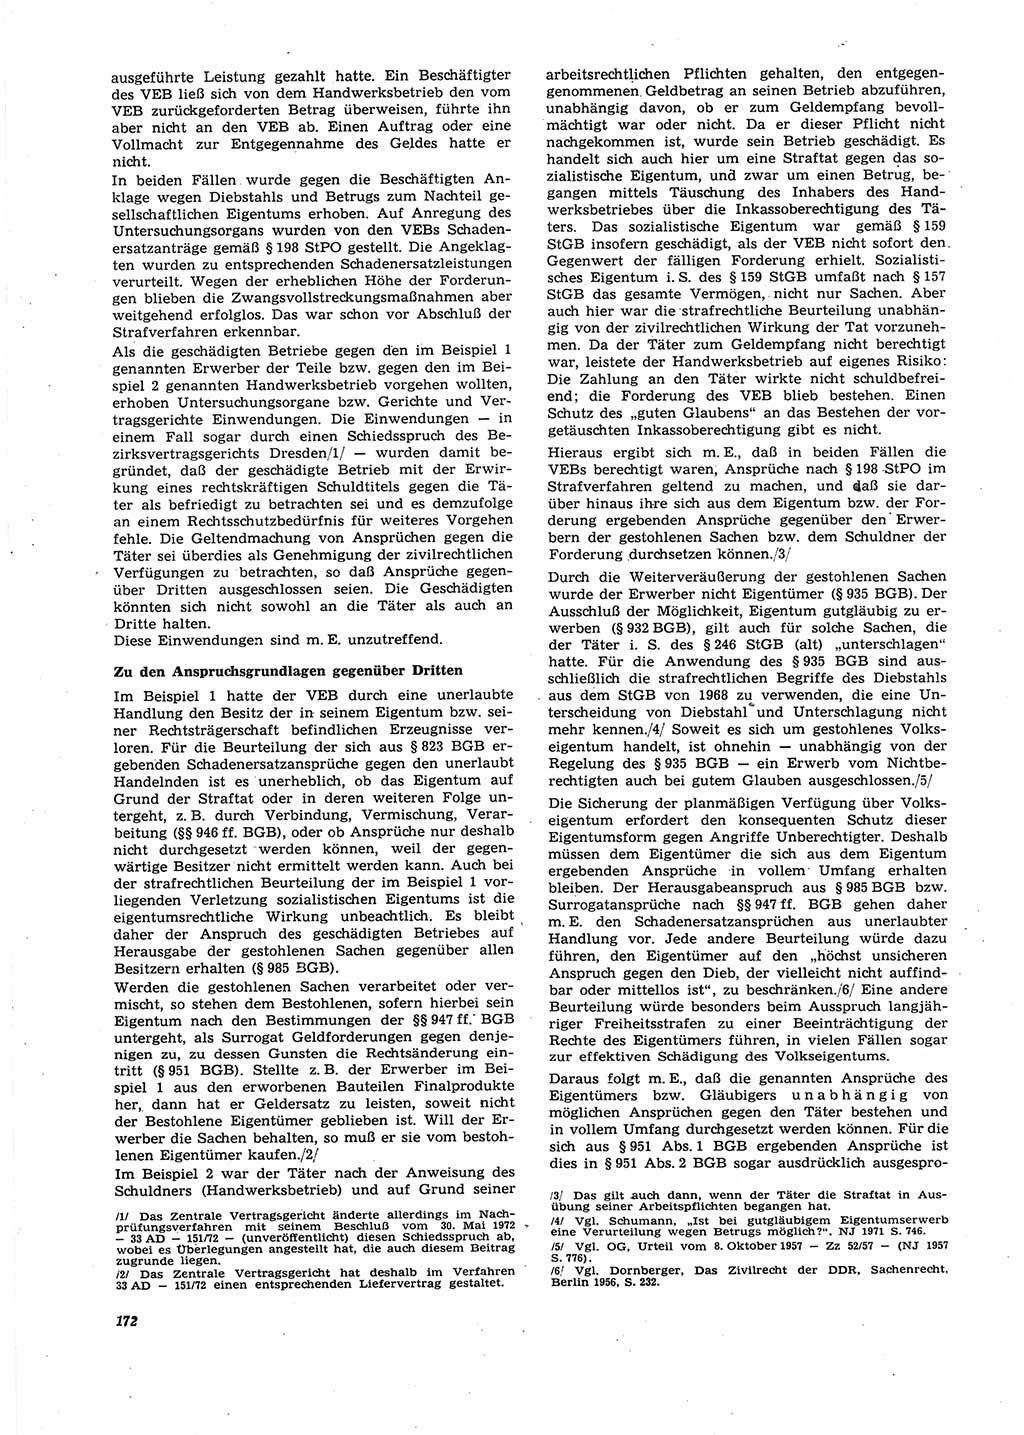 Neue Justiz (NJ), Zeitschrift für Recht und Rechtswissenschaft [Deutsche Demokratische Republik (DDR)], 27. Jahrgang 1973, Seite 172 (NJ DDR 1973, S. 172)